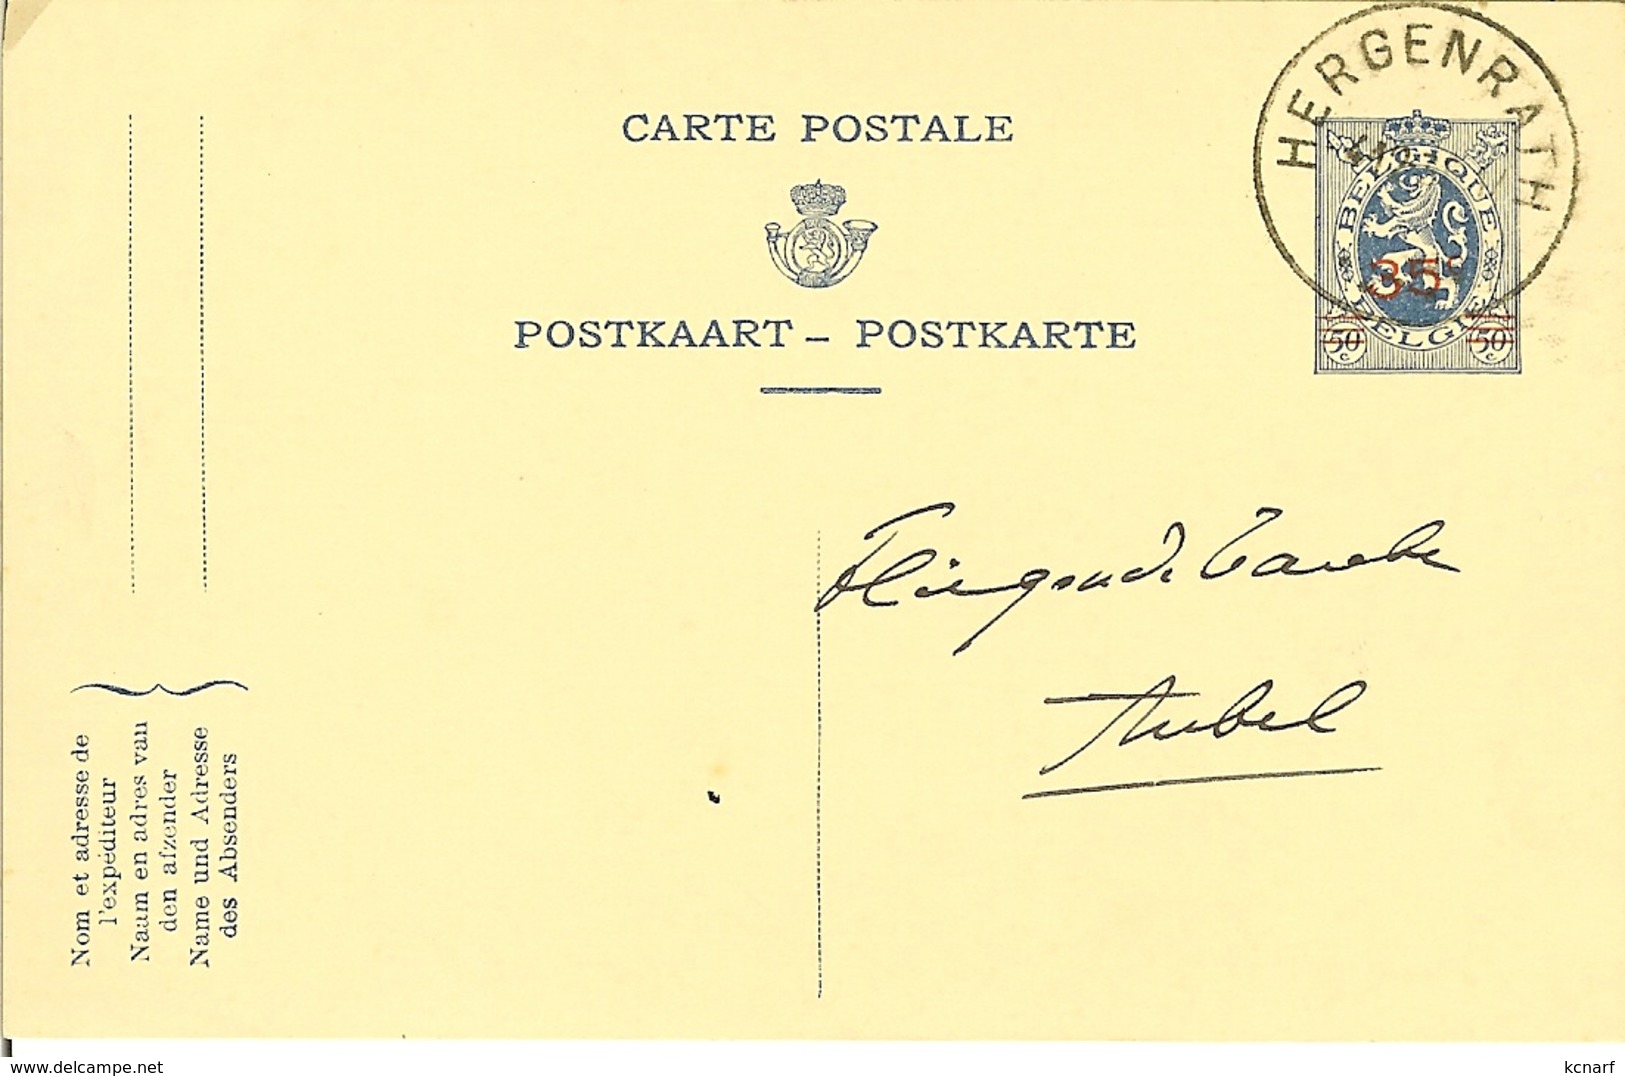 Carte Postale De HERGENRATH 1935 Pour AUBEL - Cartes Postales 1909-1934